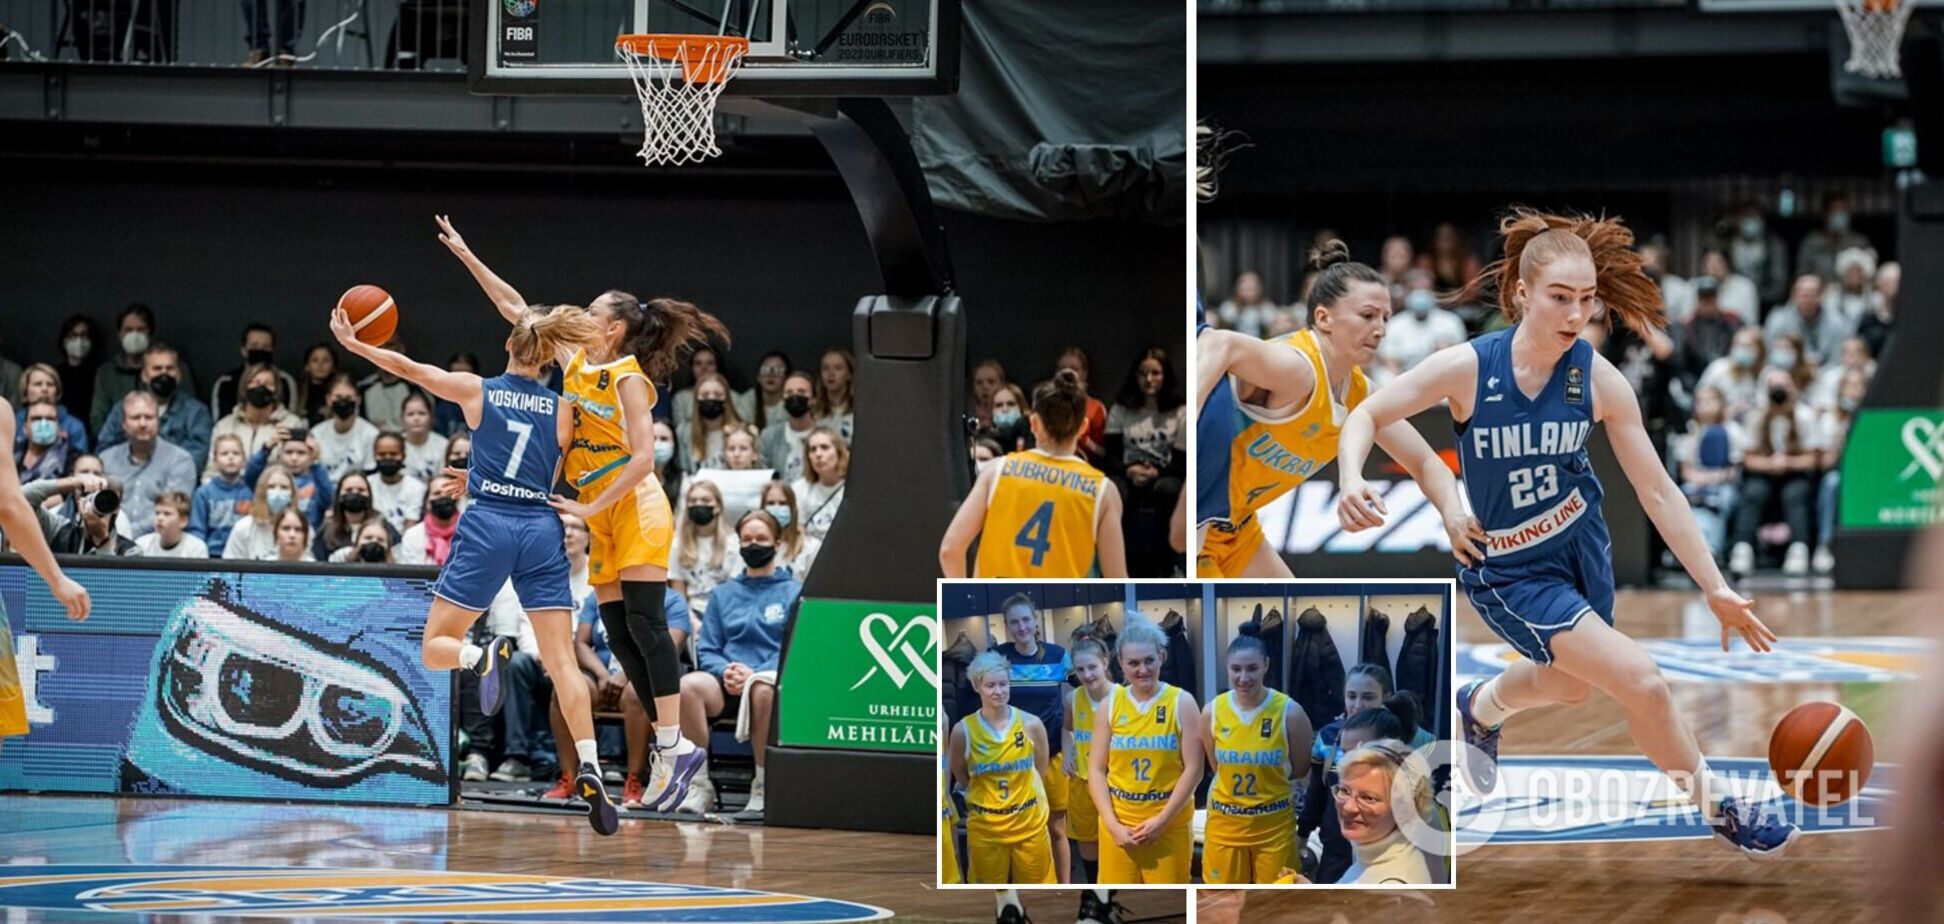 Поддержал даже посол: появилось яркое видео из раздевалки украинских баскетболисток после победы в Финляндии